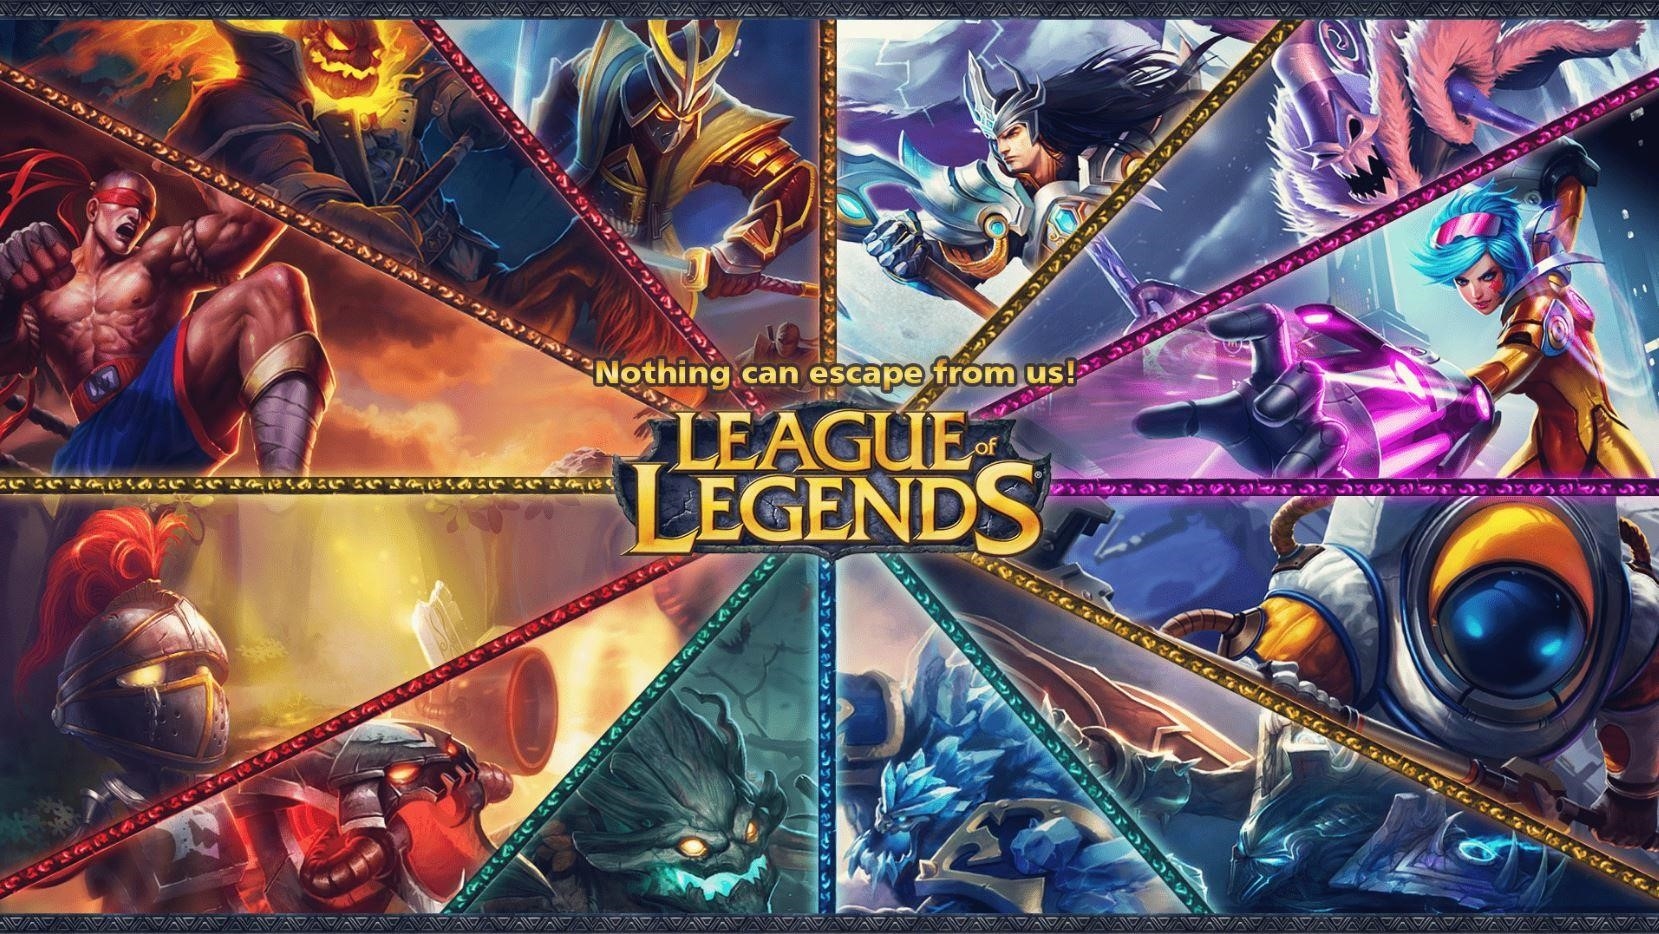 League of Legends là một trò chơi điện tử đấu trường trực tuyến, được phát triển và xuất bản bởi công ty Riot Games. Trò chơi này thu hút hàng triệu người chơi trên toàn thế giới, với cốt truyện phong phú, các nhân vật đa dạng và hệ thống gameplay phức tạp.